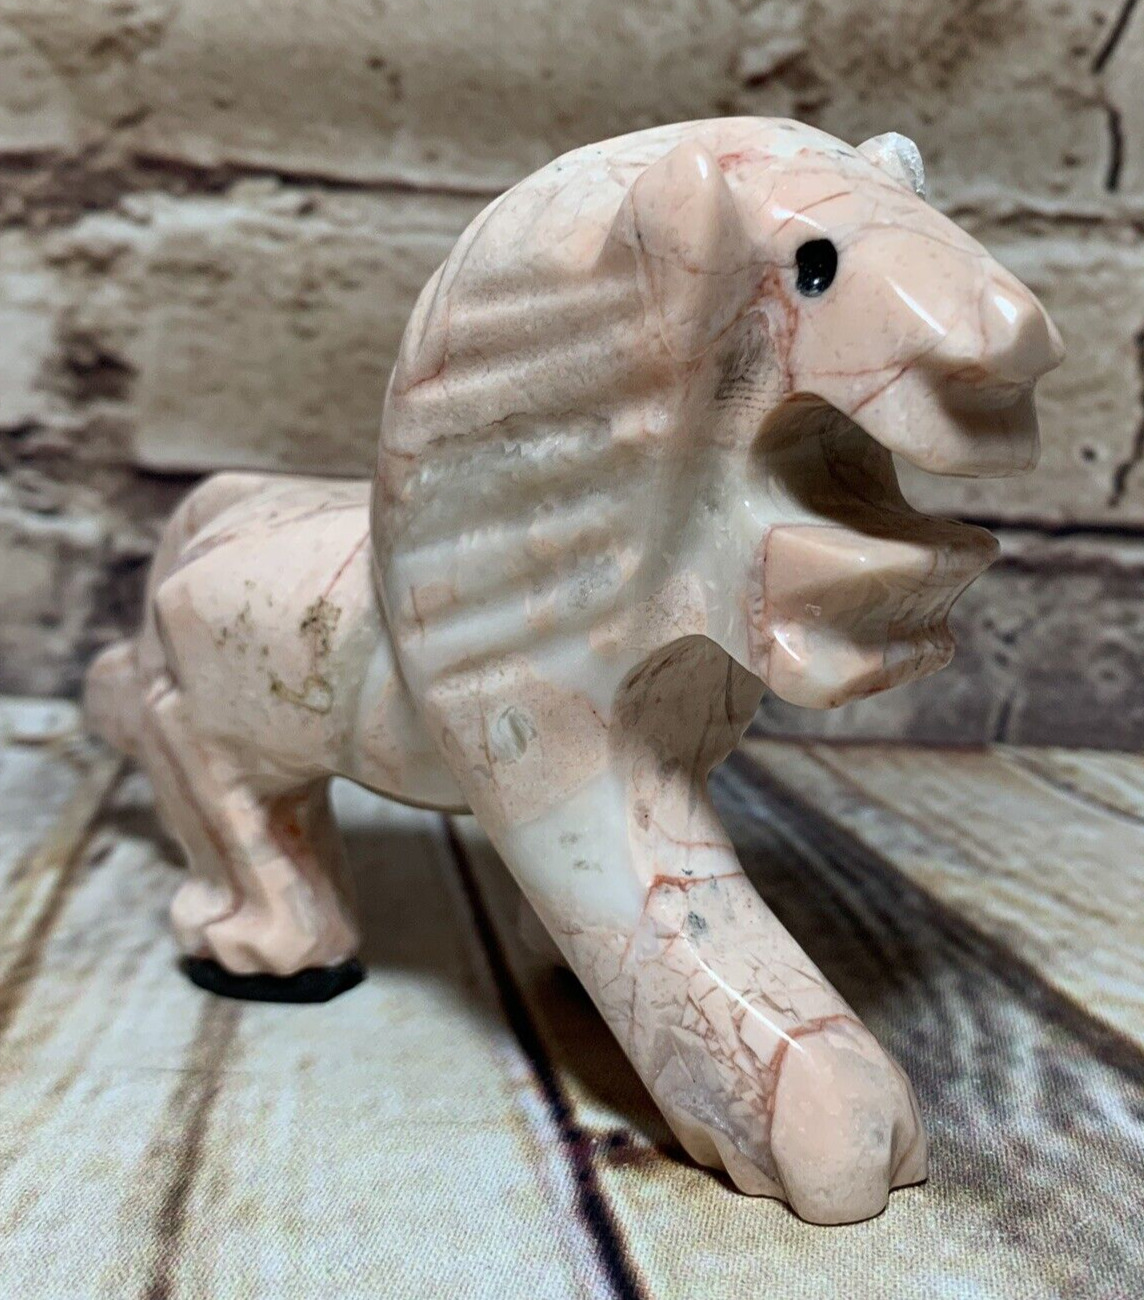 Vintage Carved Pink Marble Lion Sculpture Figure Roaring & Walking 2.75